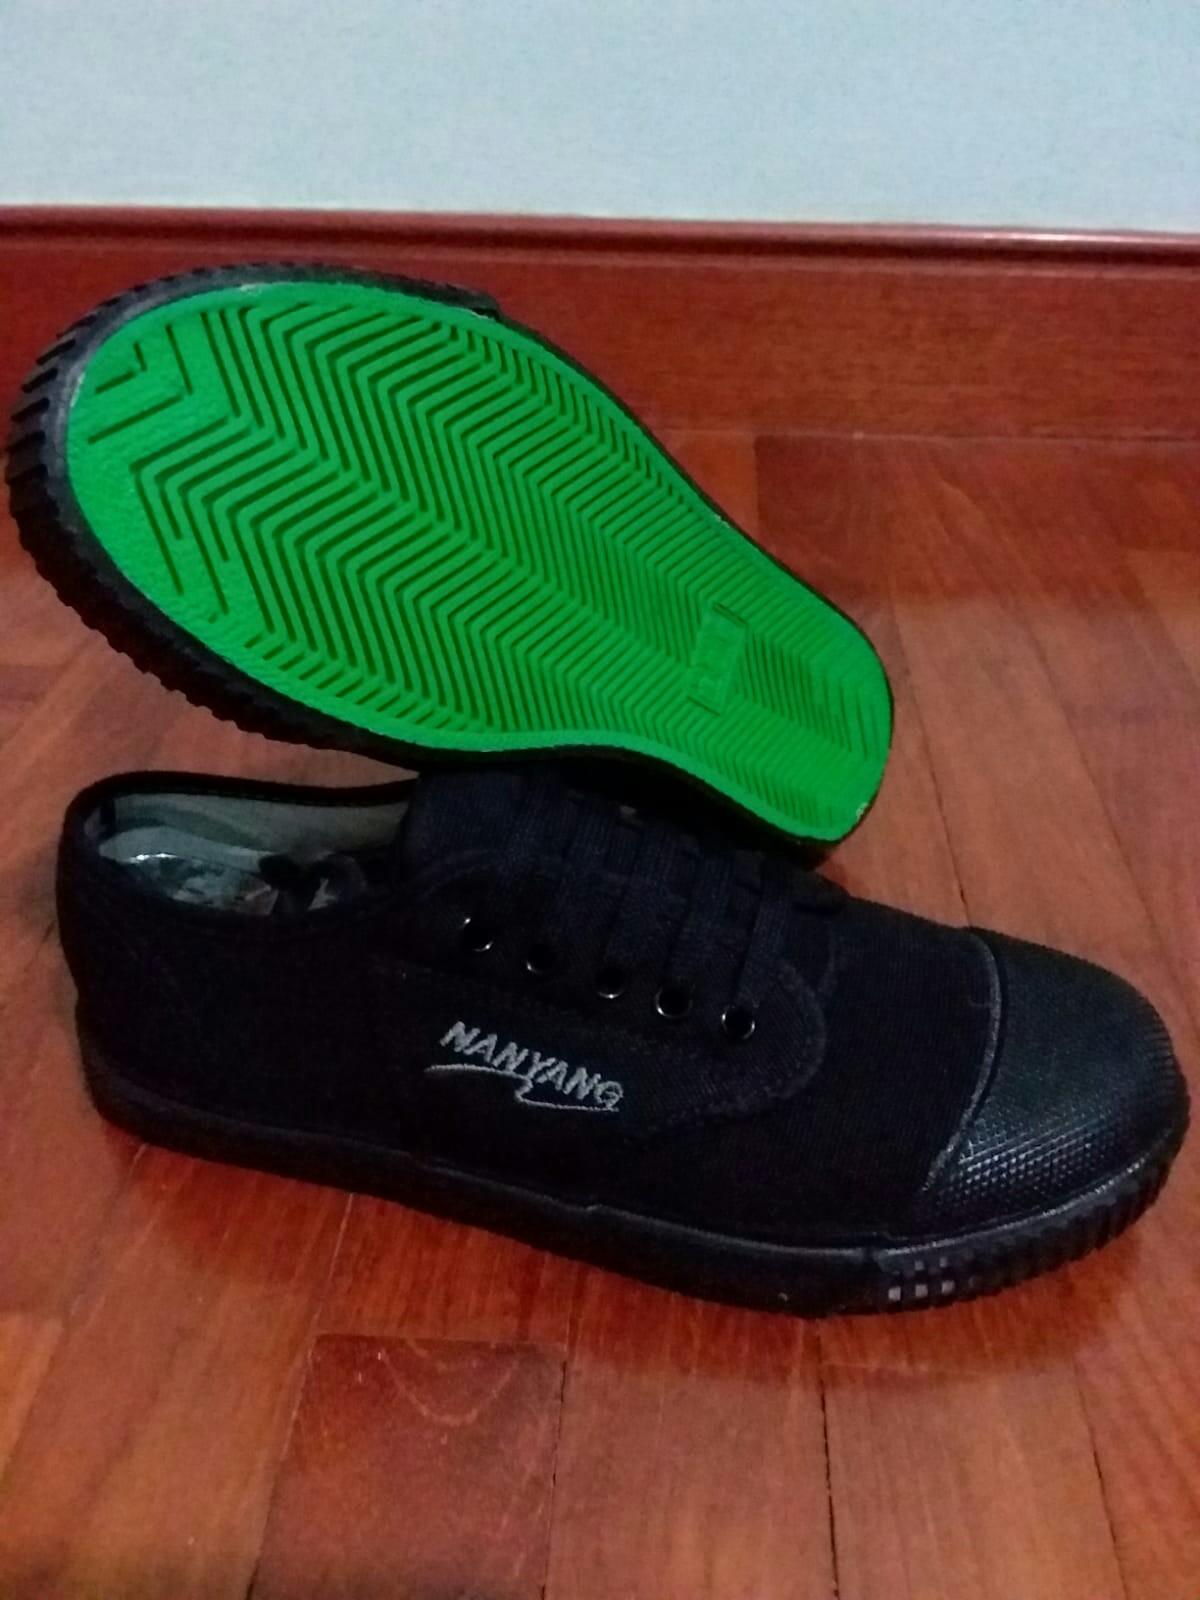 Nanyang Black Shoes, Men's Fashion 